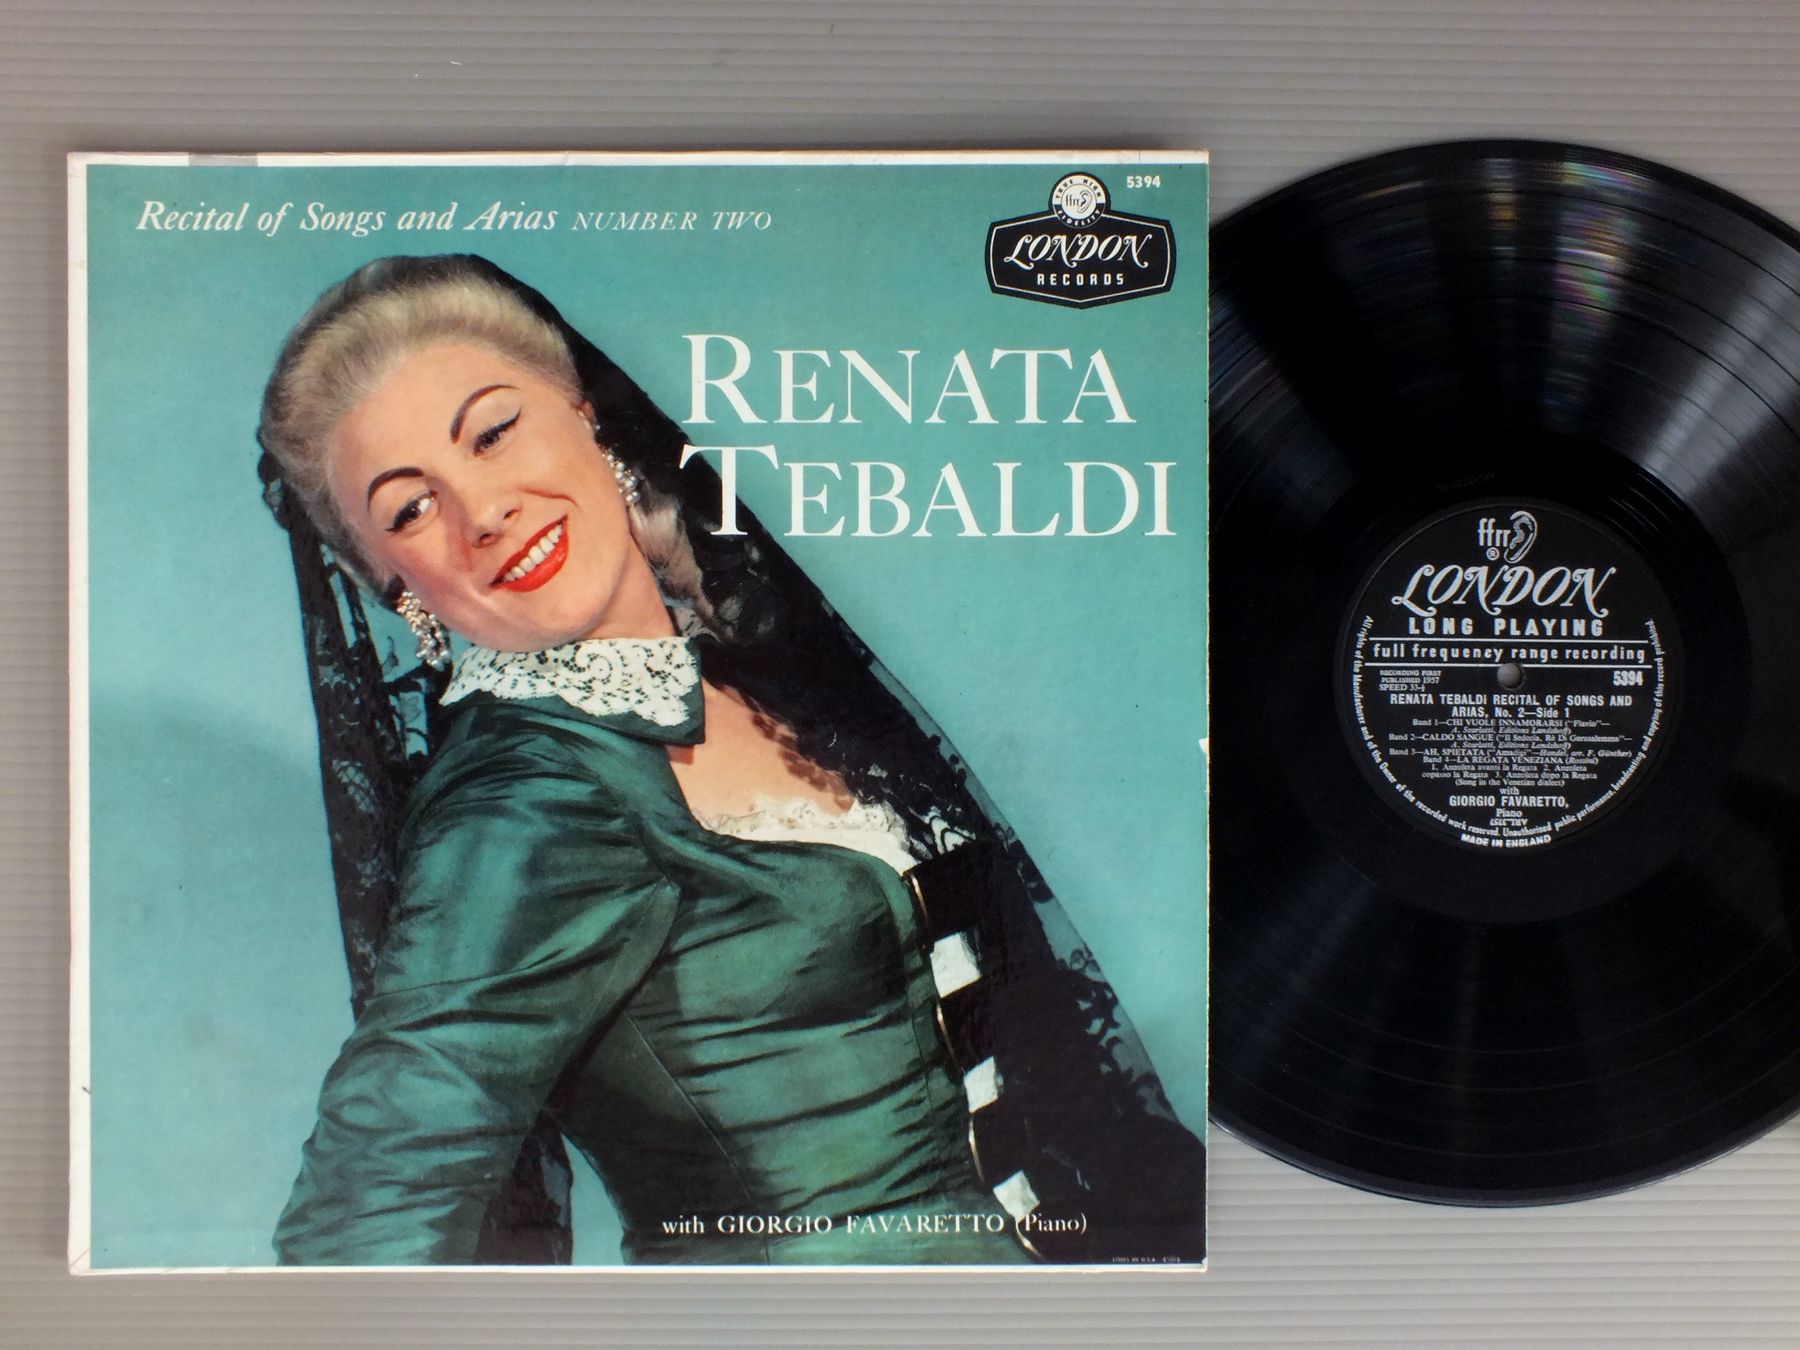 Lp / renata tebaldi/recital of songs and arias NO2 UK 5394.